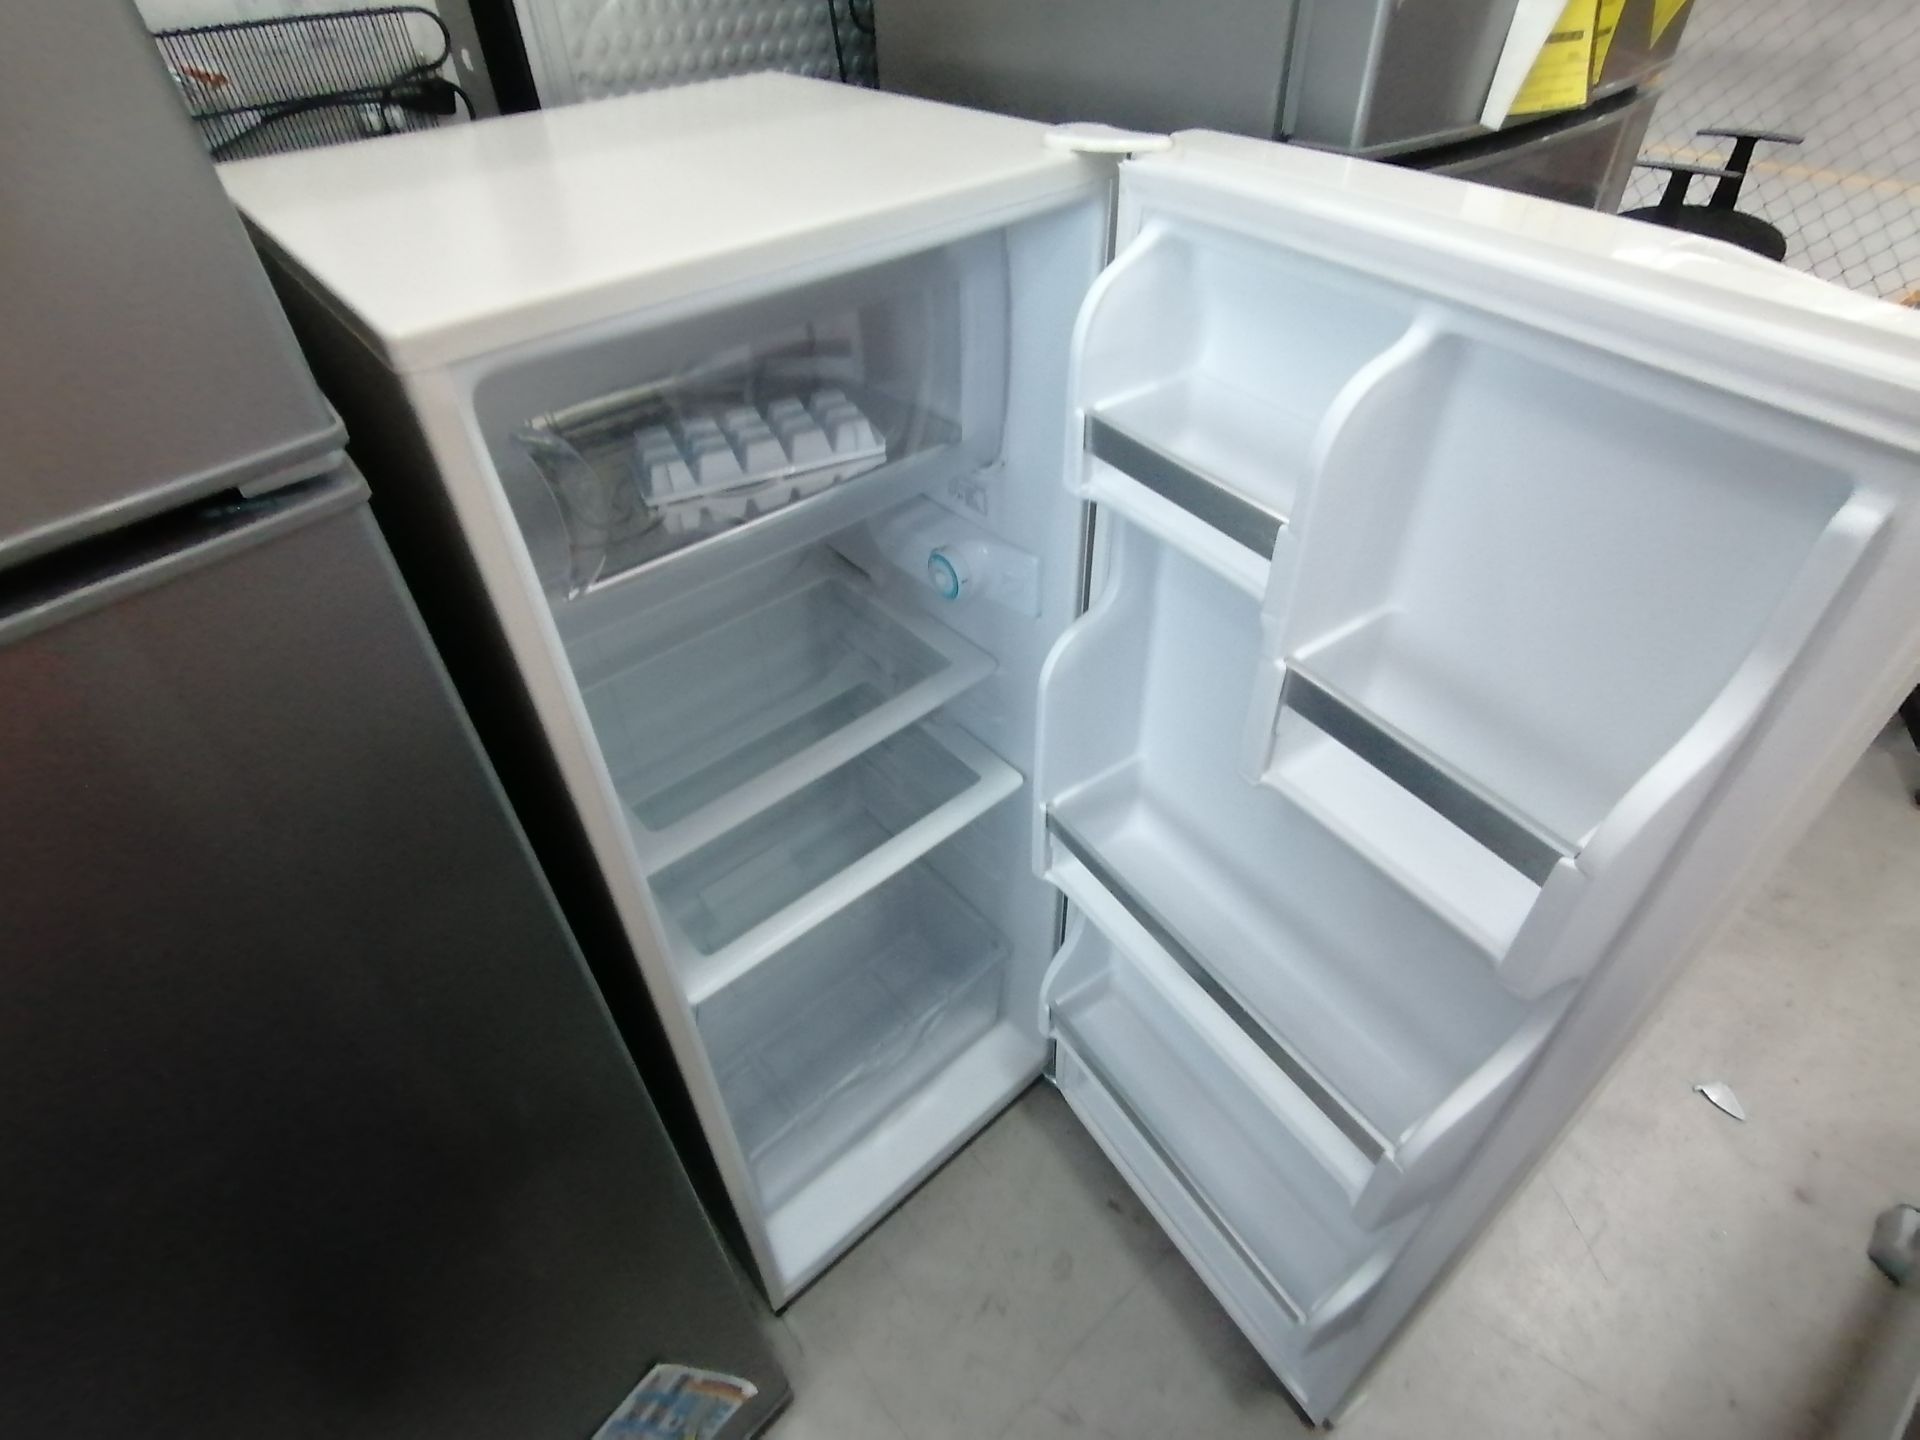 1 Refrigerador Marca Acros, Modelo ERT07TXLT, Serie VRA4436928, Color Blanco, Golpeado, Favor de in - Image 12 of 14